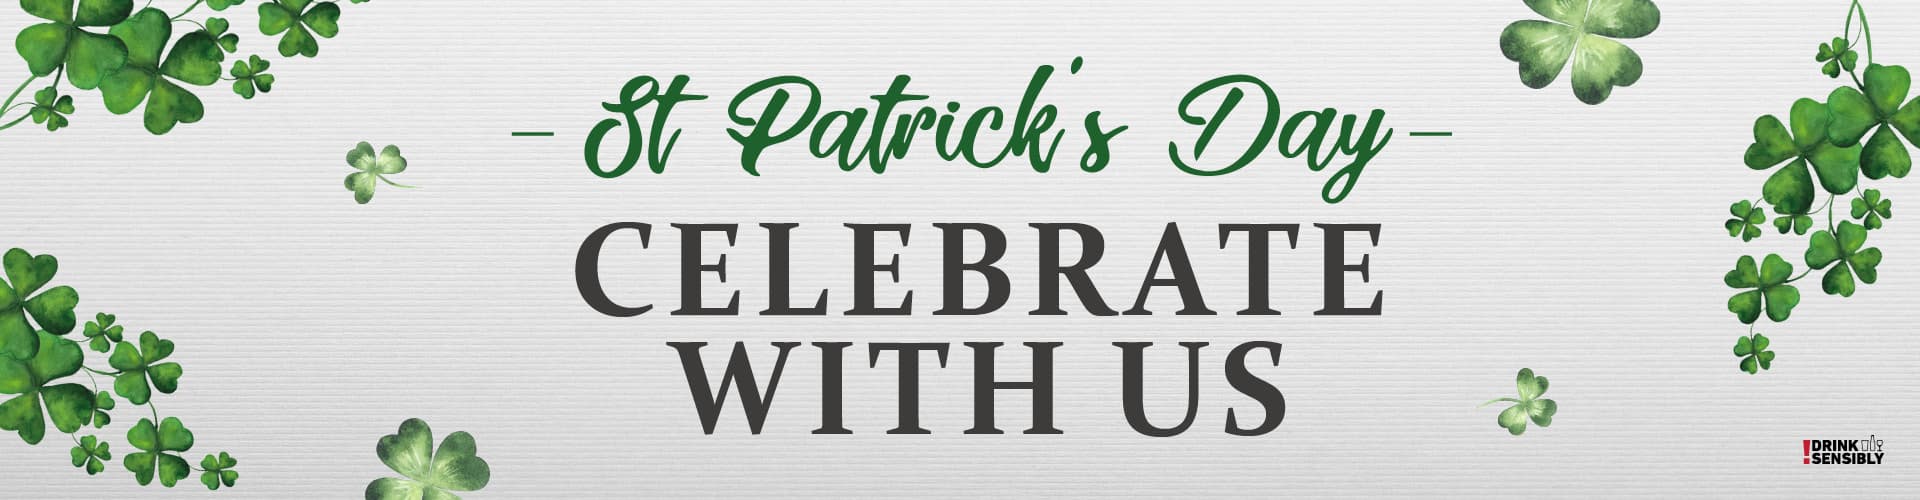 Celebrate St Patrick's Day in Bushey